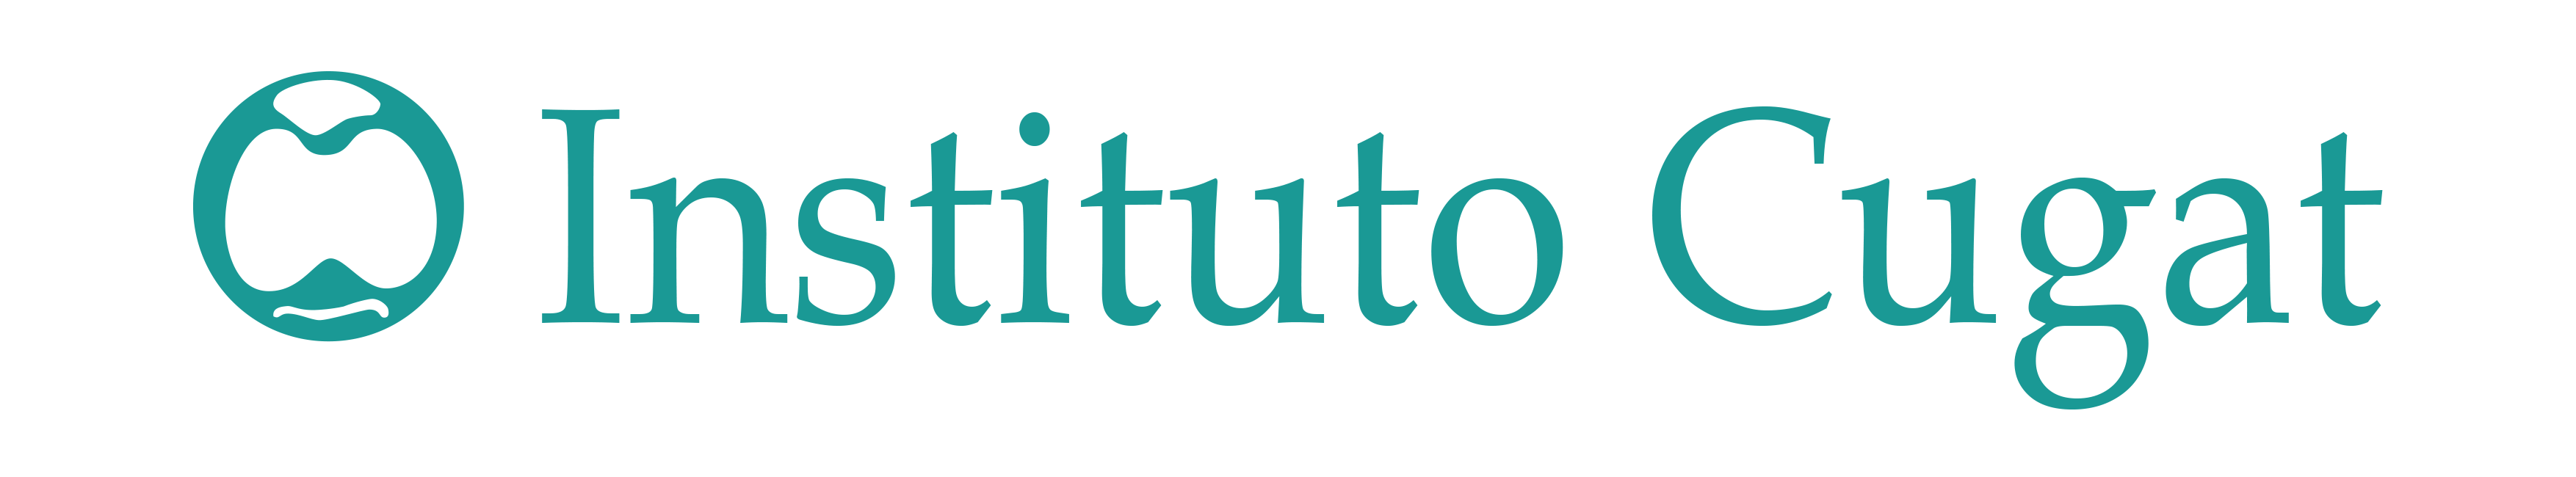 Instituto Cugat Logo